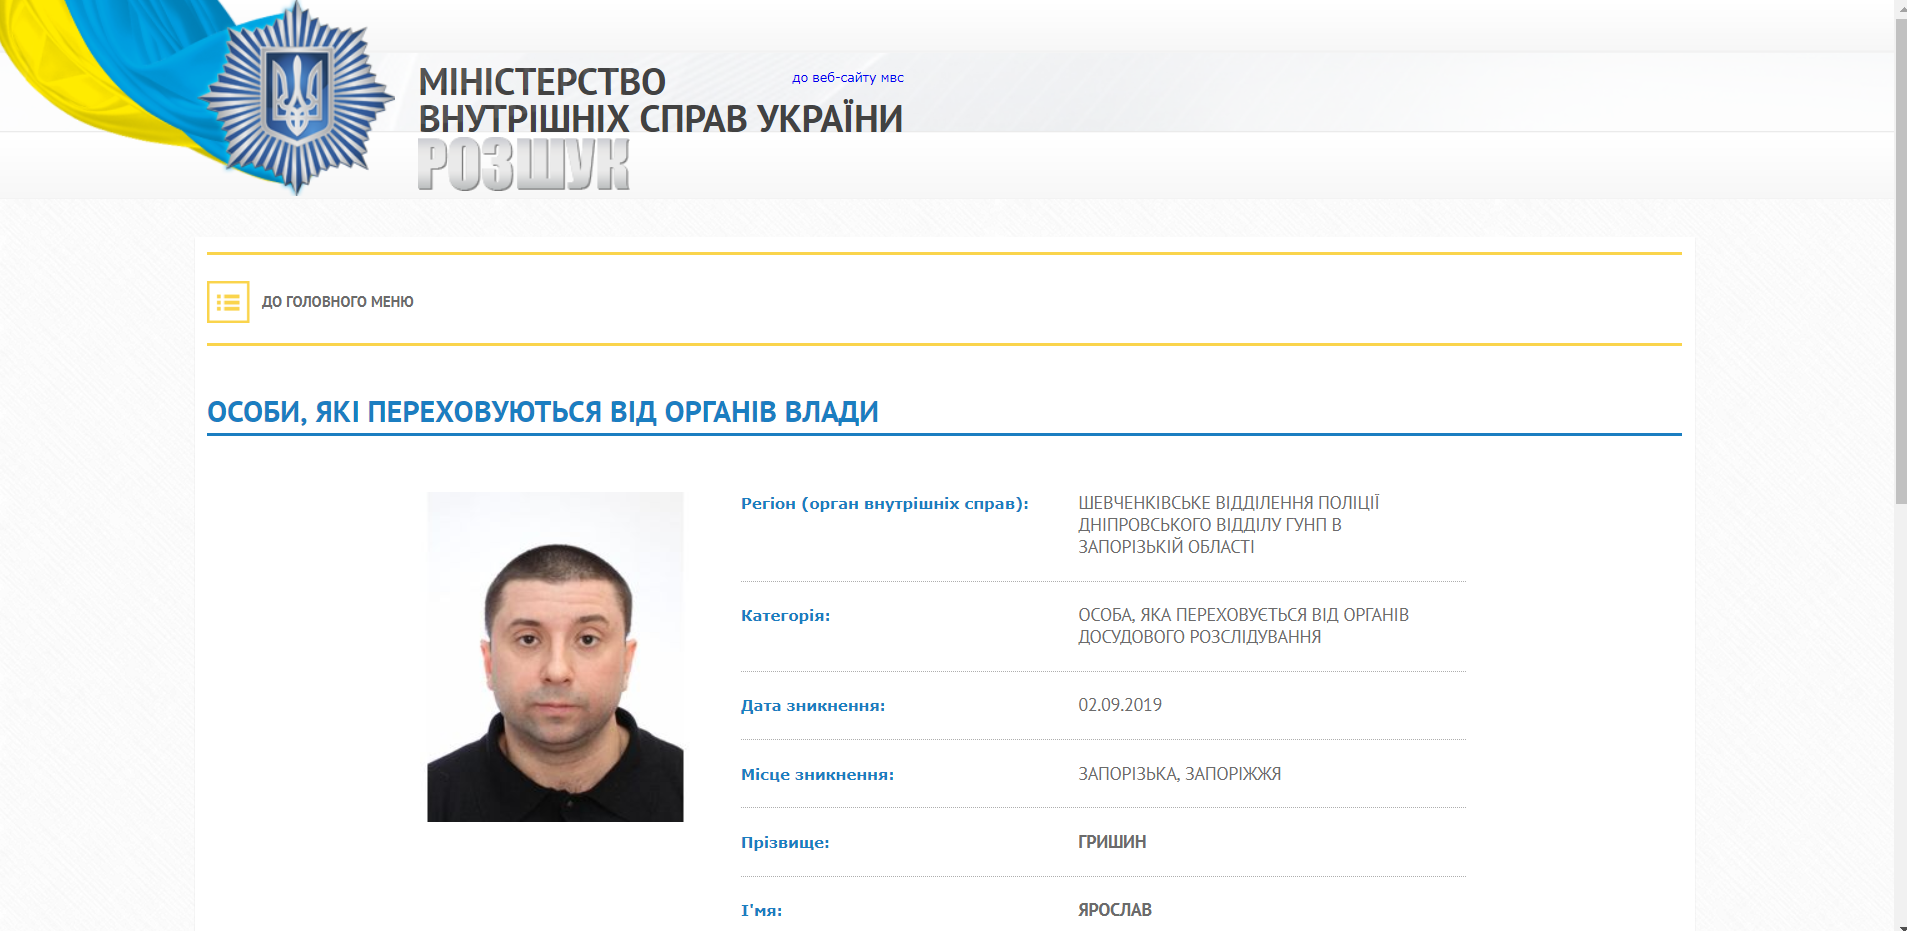 Ярослав Гришин проводит агитацию "из тюрьмы" (ФОТО)